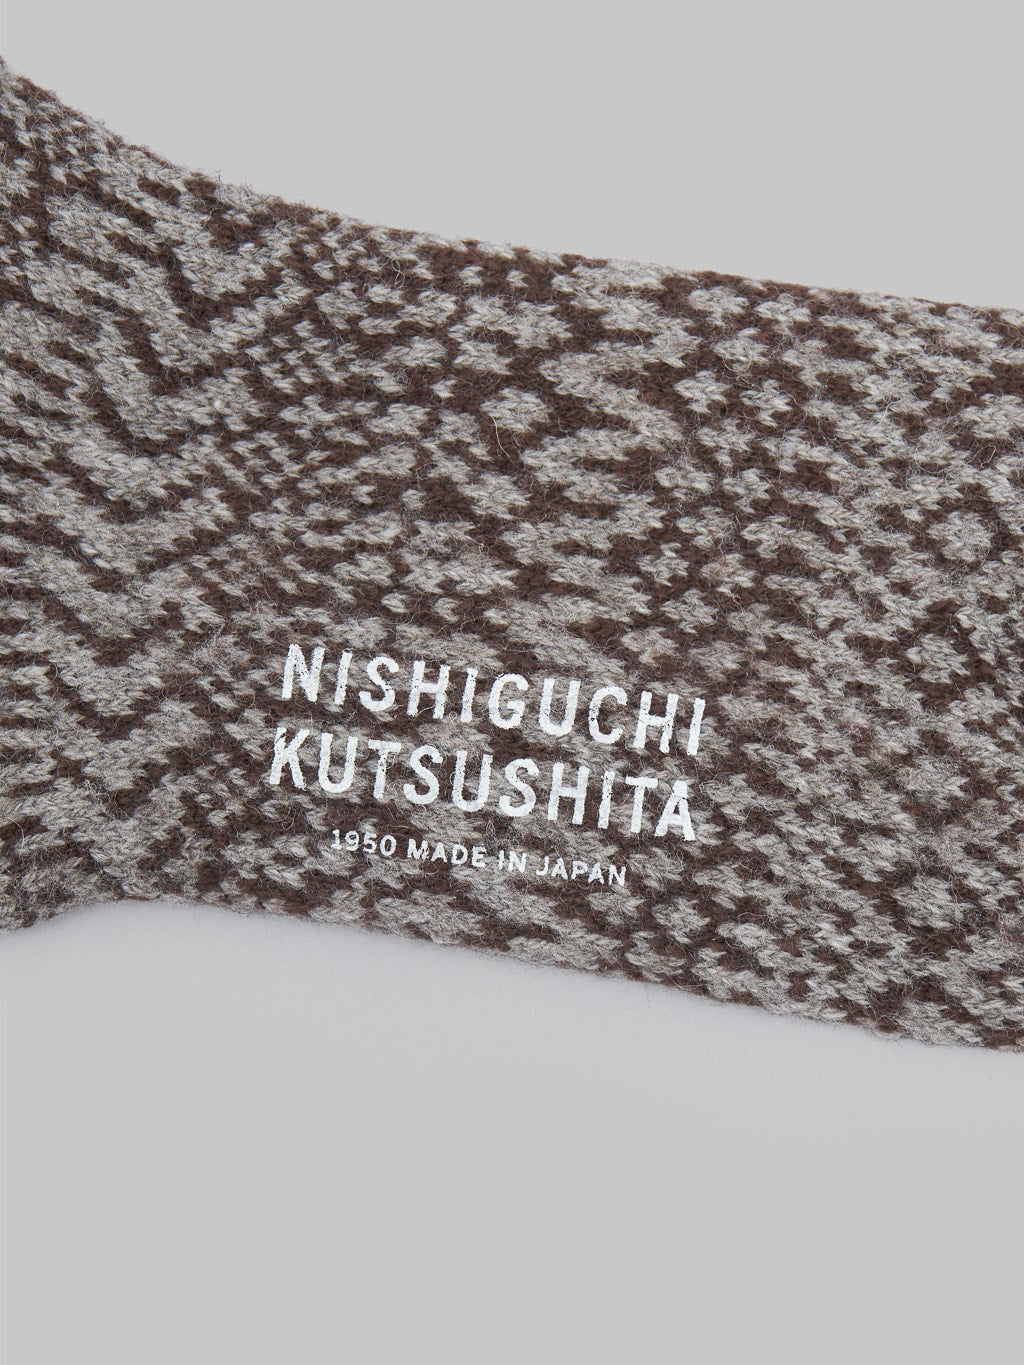 Nishiguchi Kutsushita Wool Jacquard Socks Grey Brand Logo